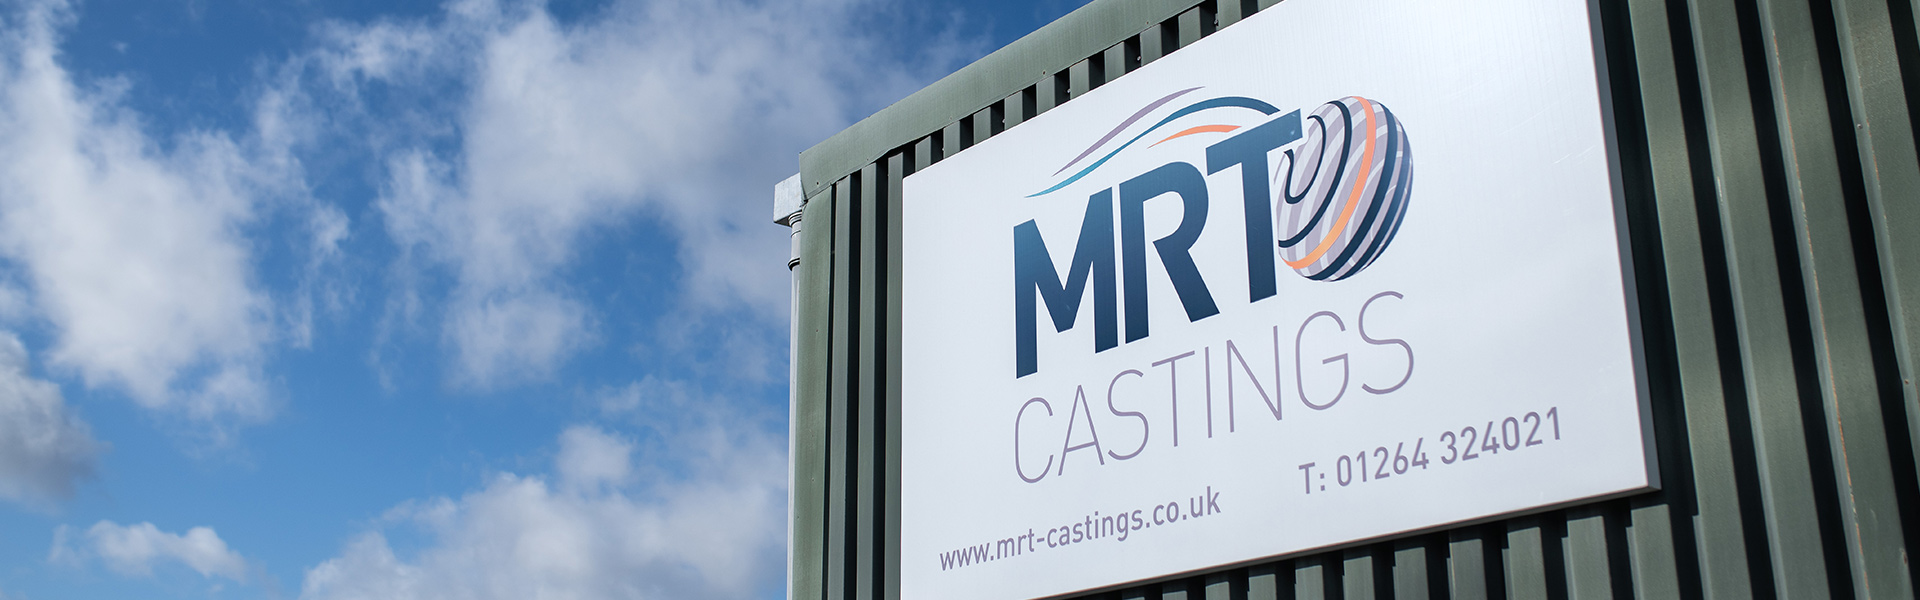 MRT Castings Premises - MRT Castings